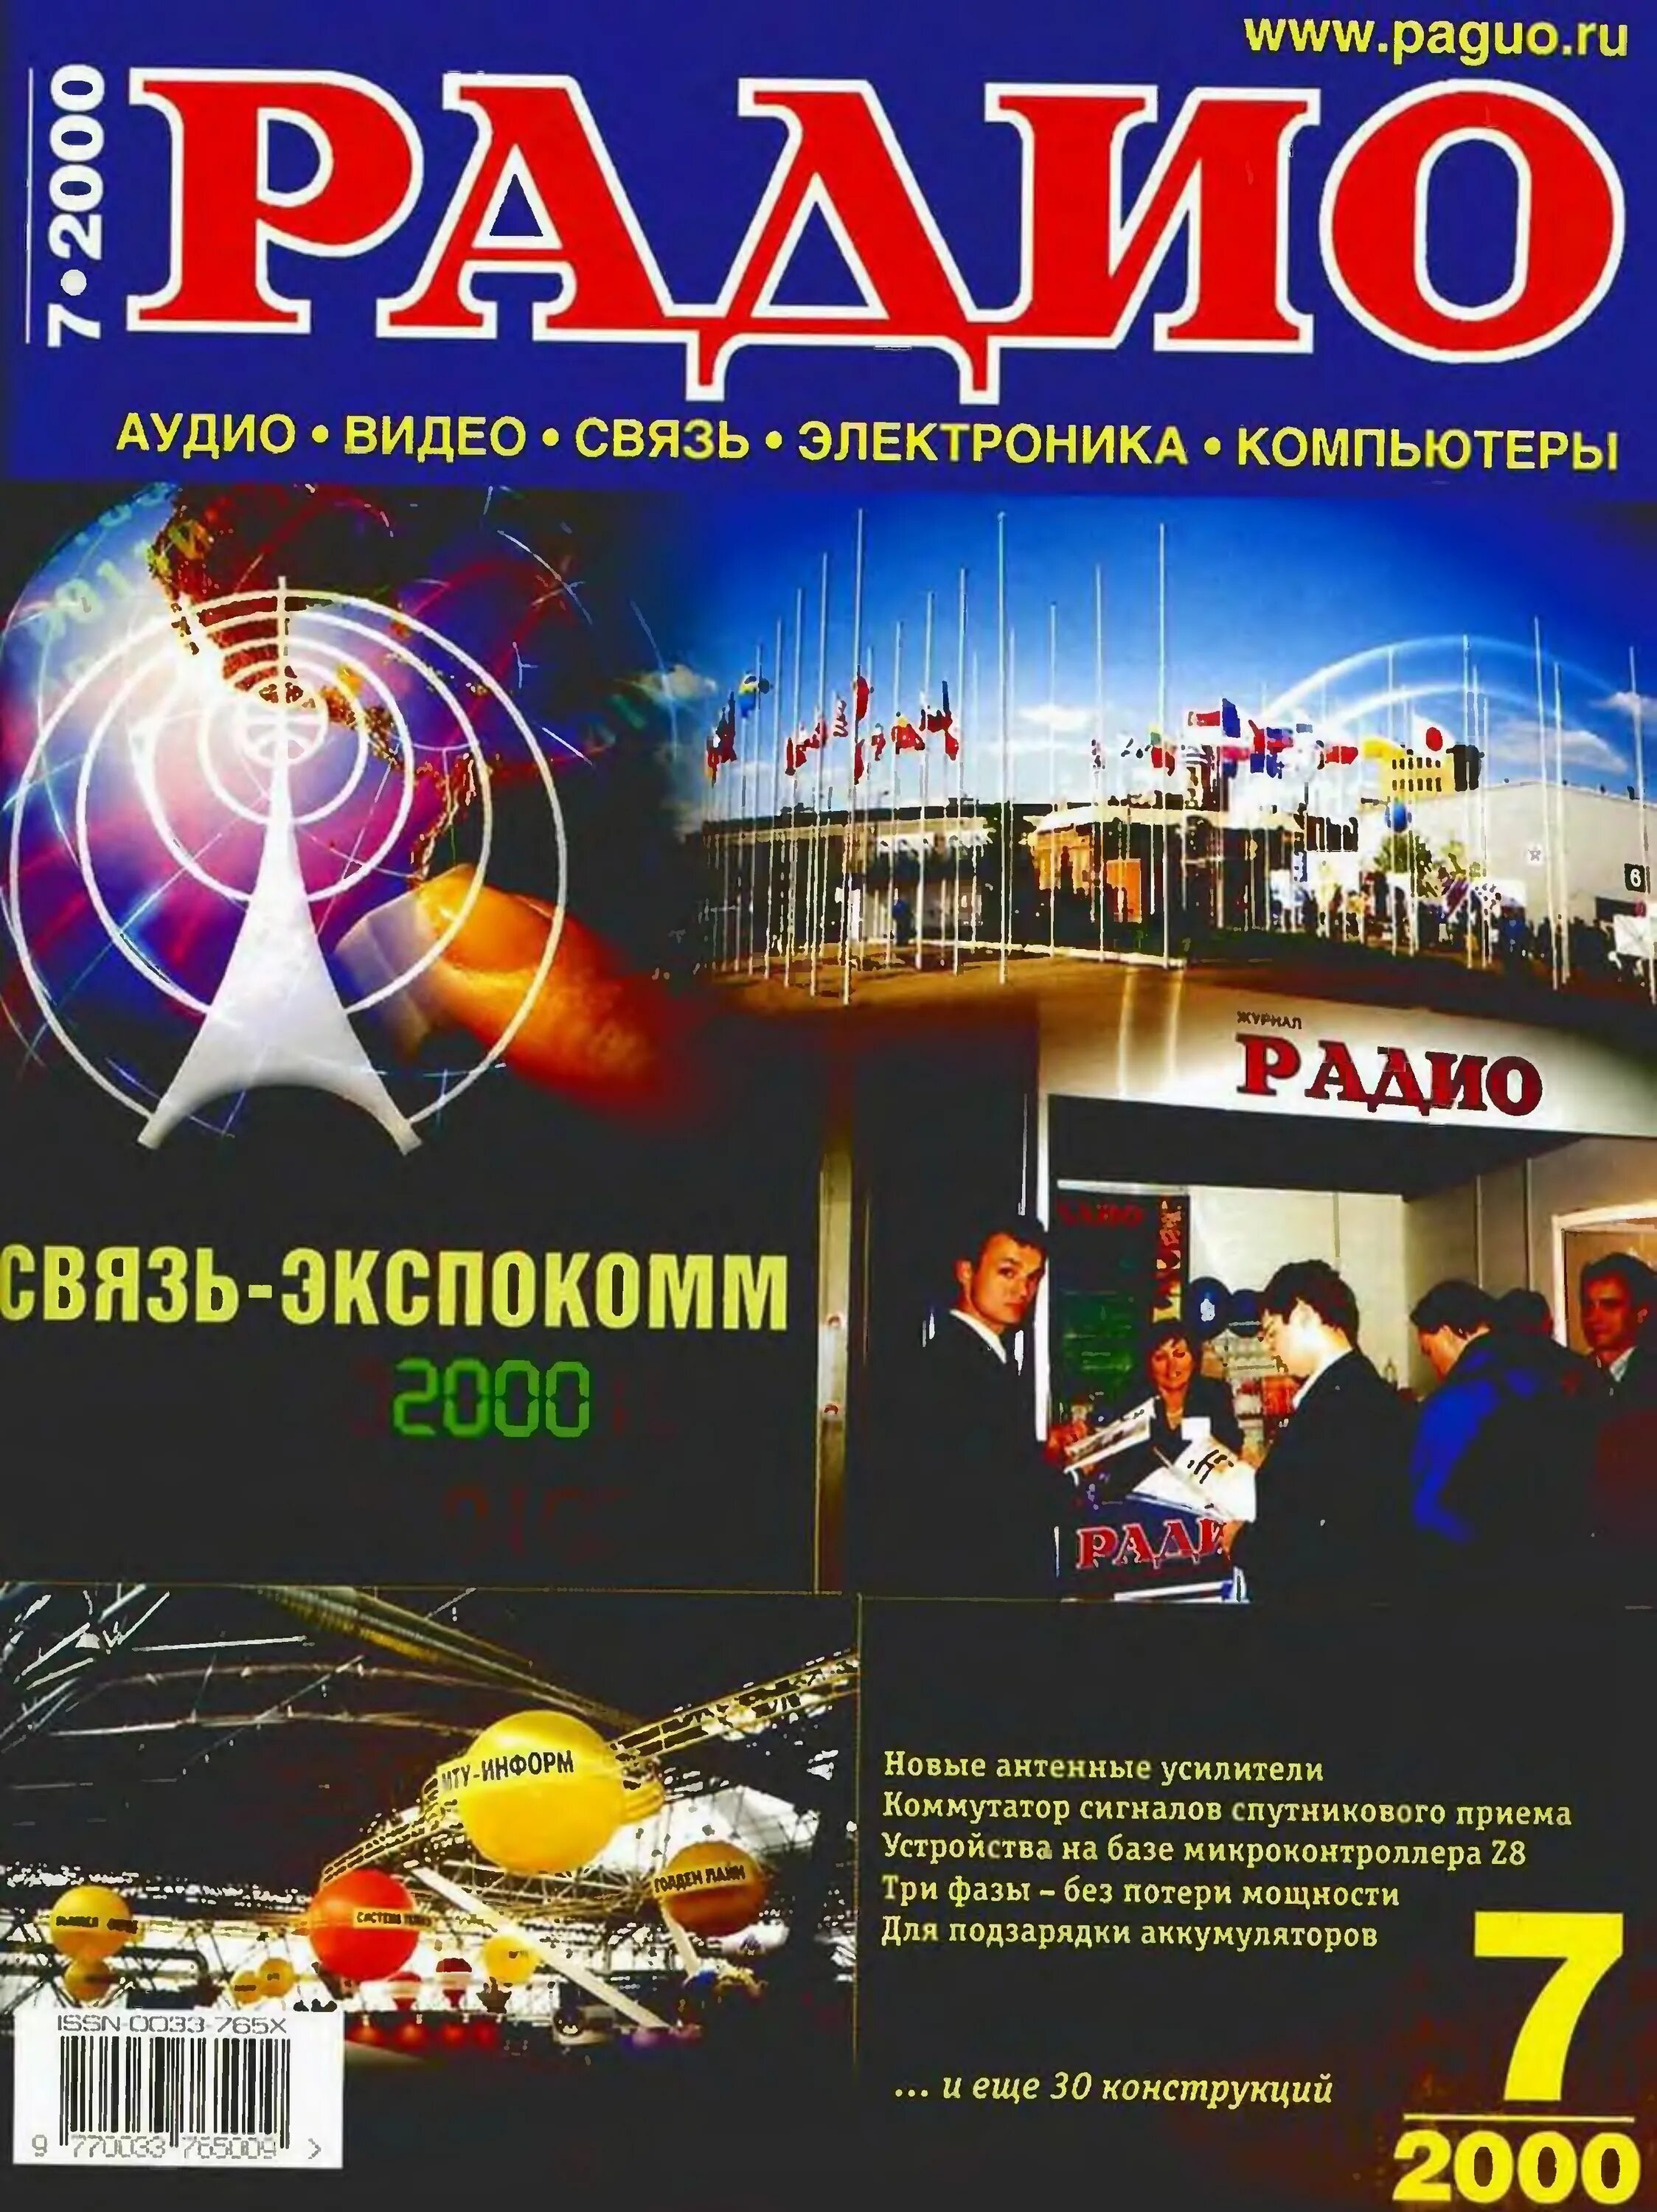 Радио no 8. Радио 7 2000. Журнал радио 2000. Обложка журнала радио. Радио в 2000 годах.